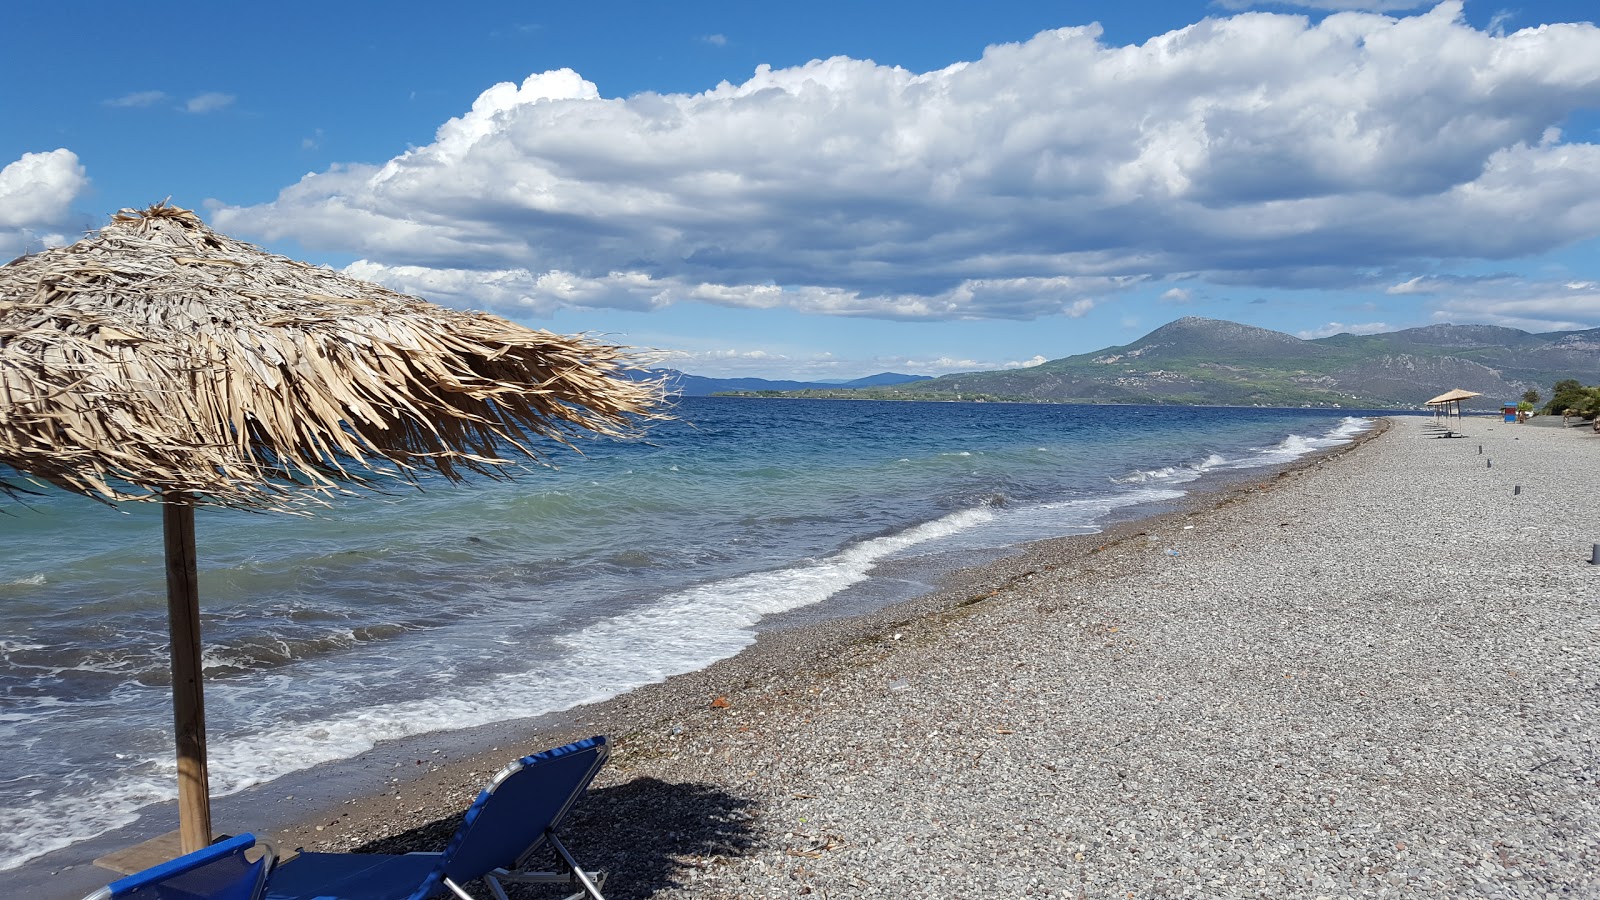 Foto de Asproneri beach II - lugar popular entre los conocedores del relax